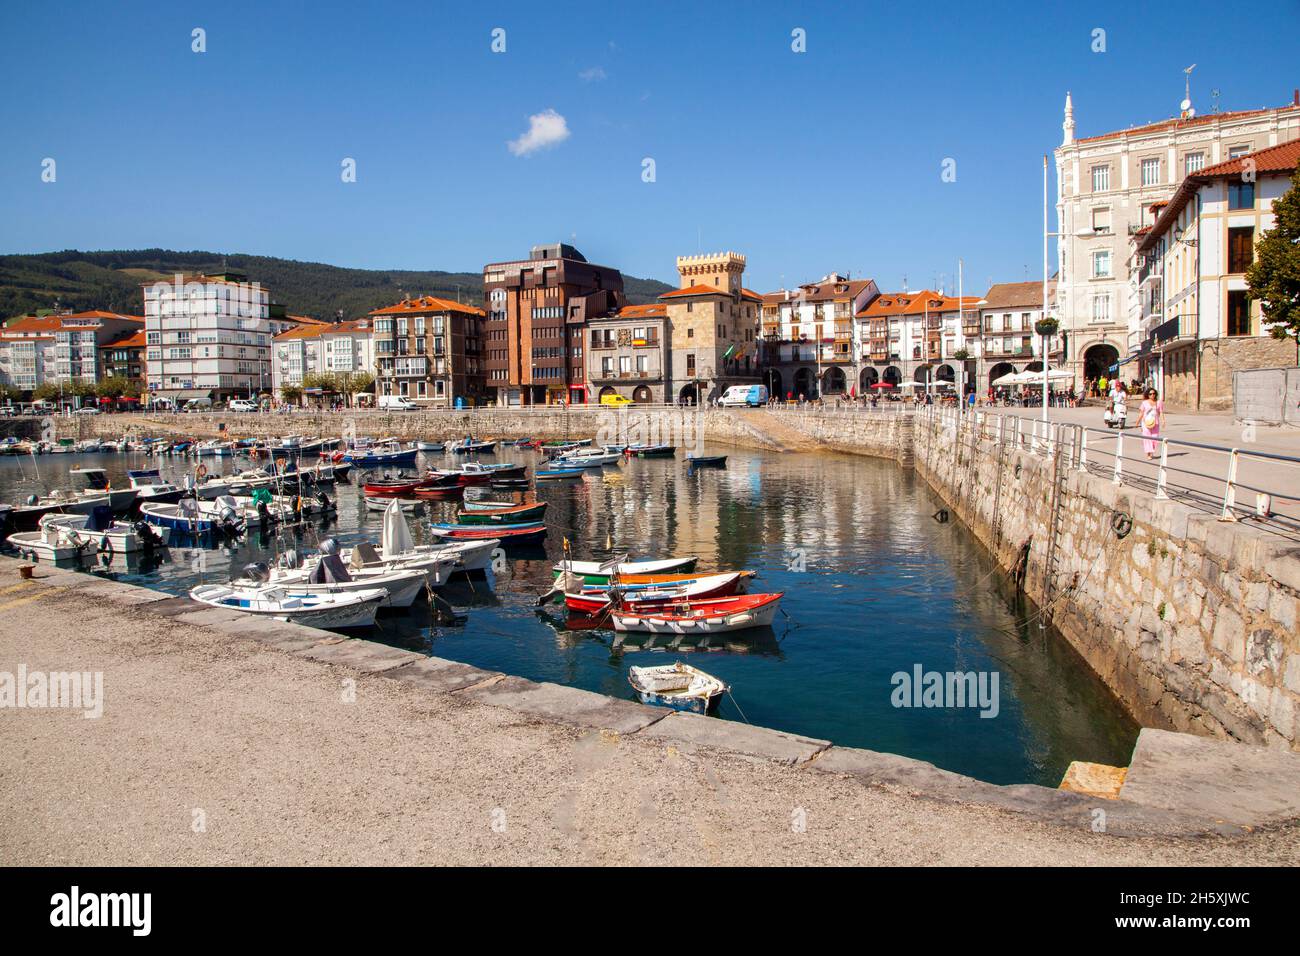 Bateaux dans le port au port espagnol et station balnéaire de Castro Urdiales Cantabria sur la côte de Cantabrique Espagne Banque D'Images